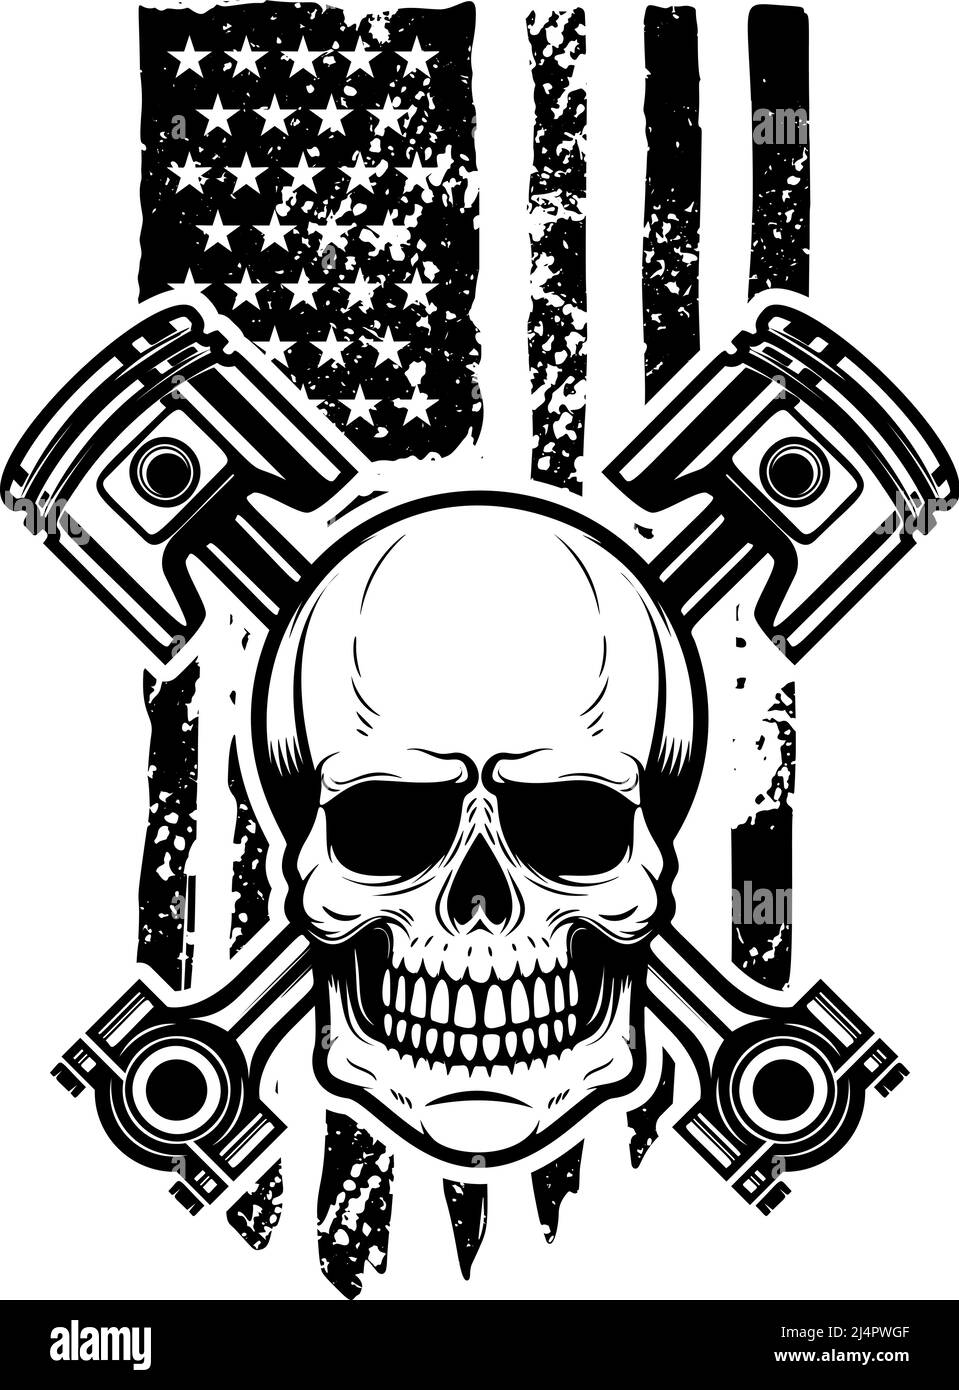 Schädel mit gekreuzten Kolben auf amerikanischer Flagge Hintergrund. Gestaltungselement für Logo, Emblem, Schild, Poster, T-Shirt. Vektorgrafik Stock Vektor